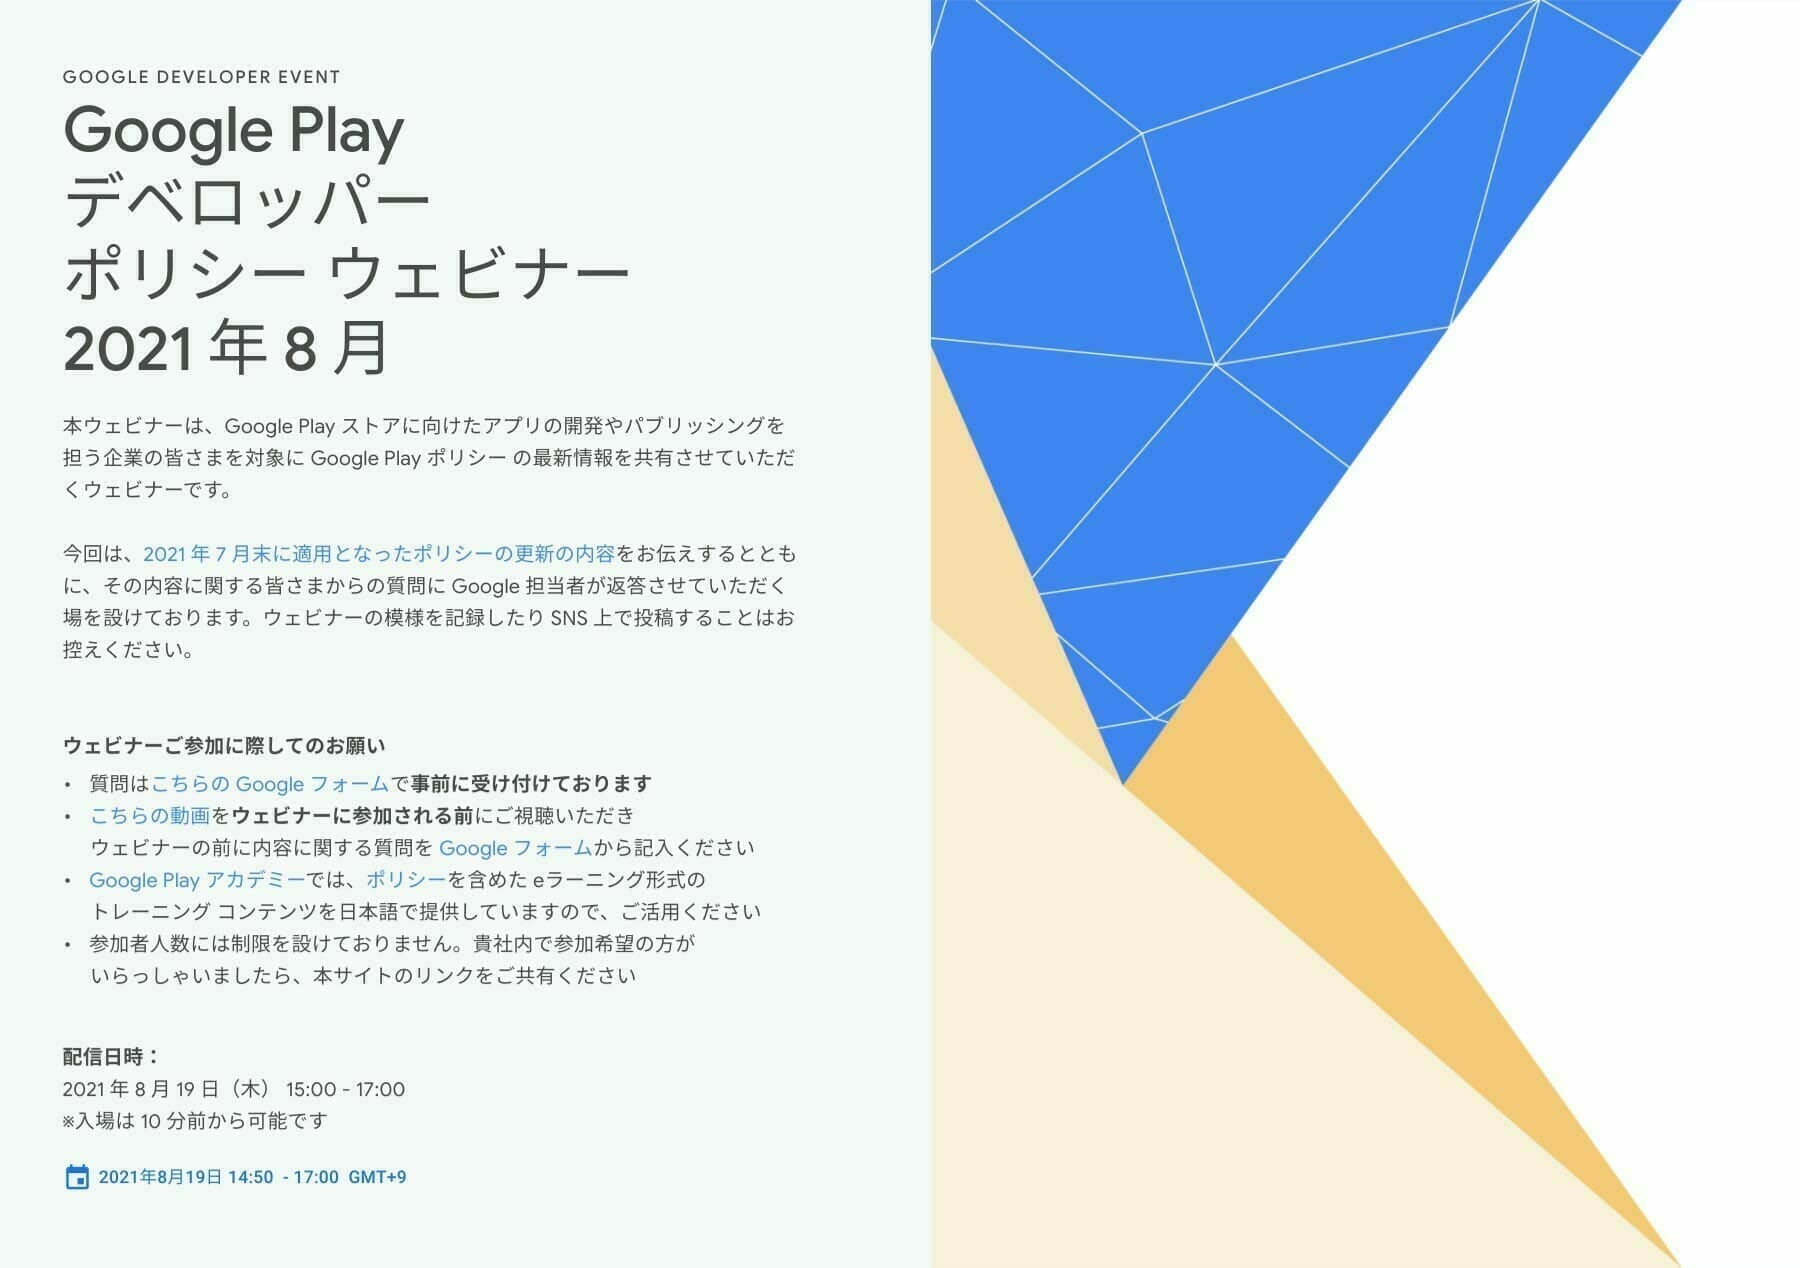 [Google Play] Google Play デベロッパー ポリシー ウェビナー 2021 年 8 月